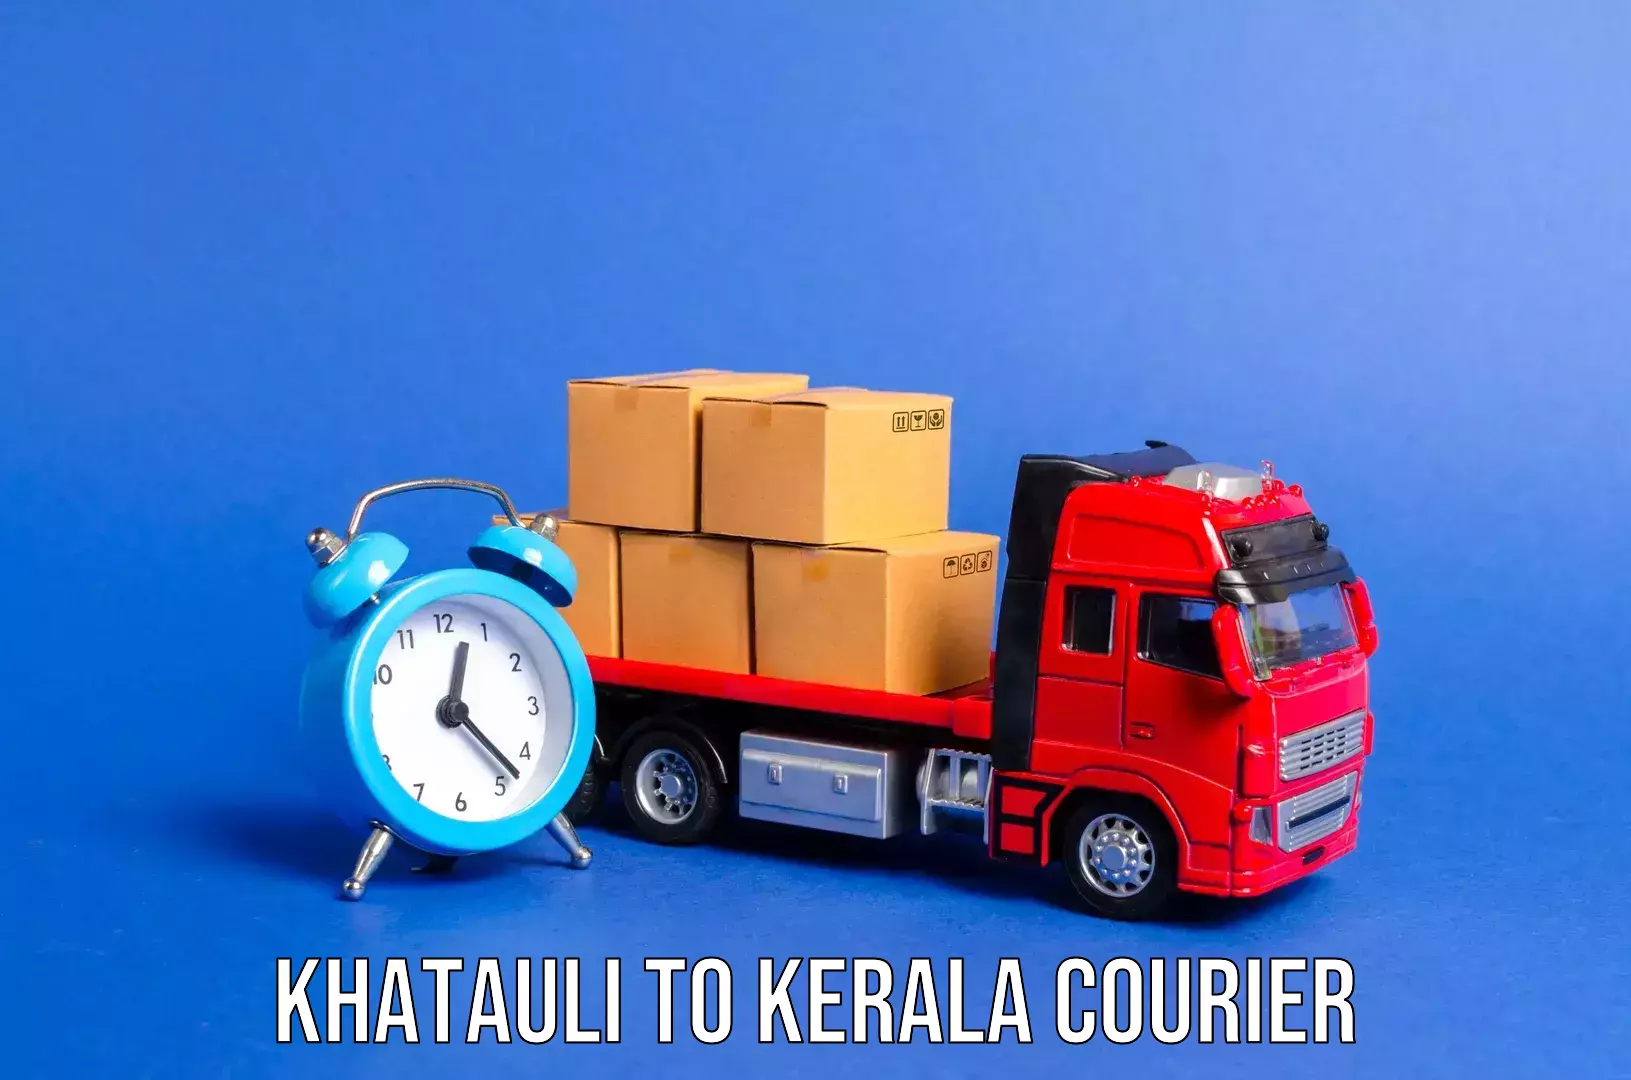 Luggage transport company Khatauli to Chungathara